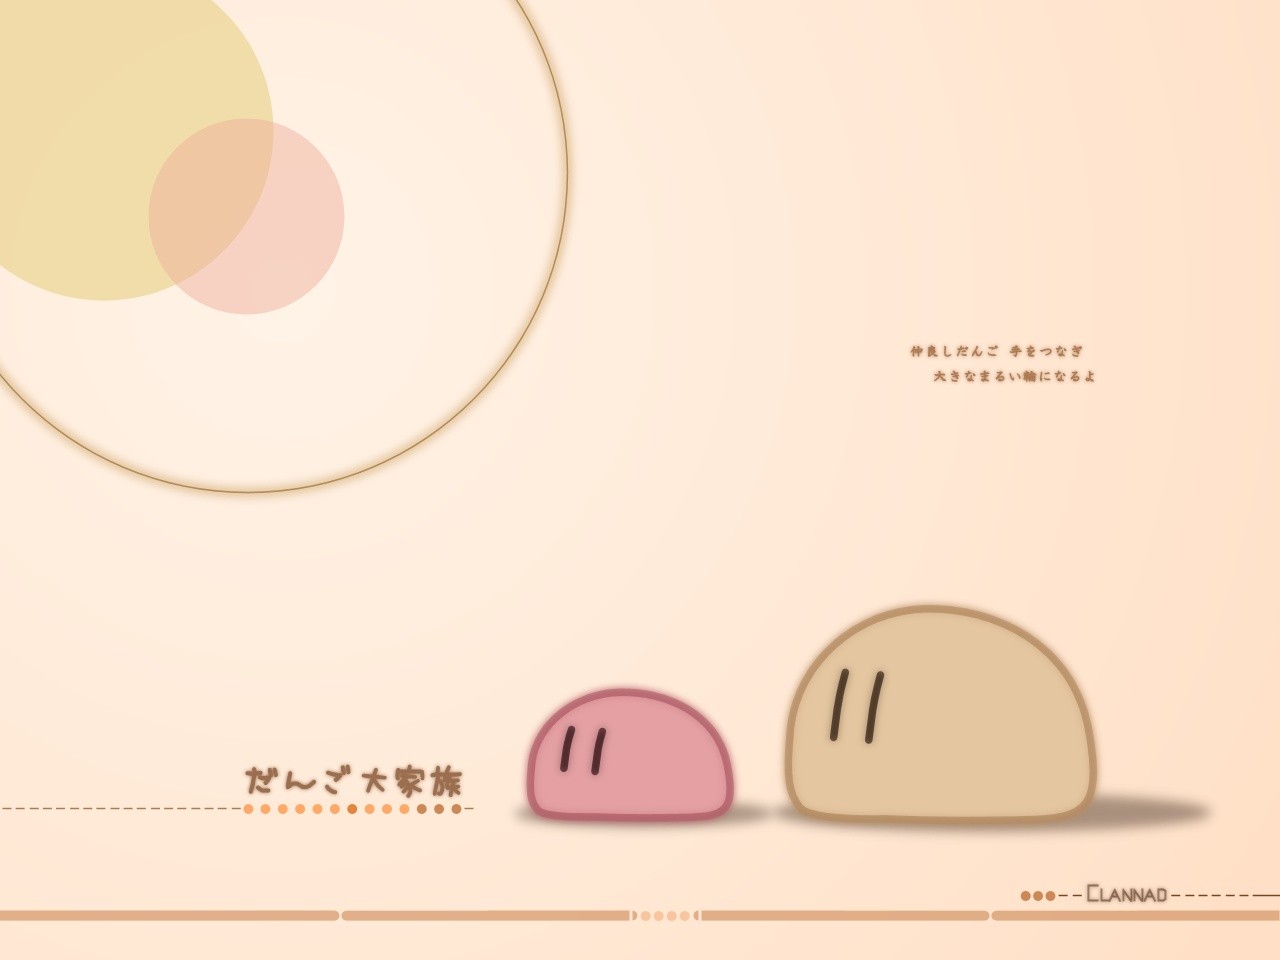 clannad ushio okazaki furukawa nagisa dango anime wallpapers hd desktop and mobile backgrounds